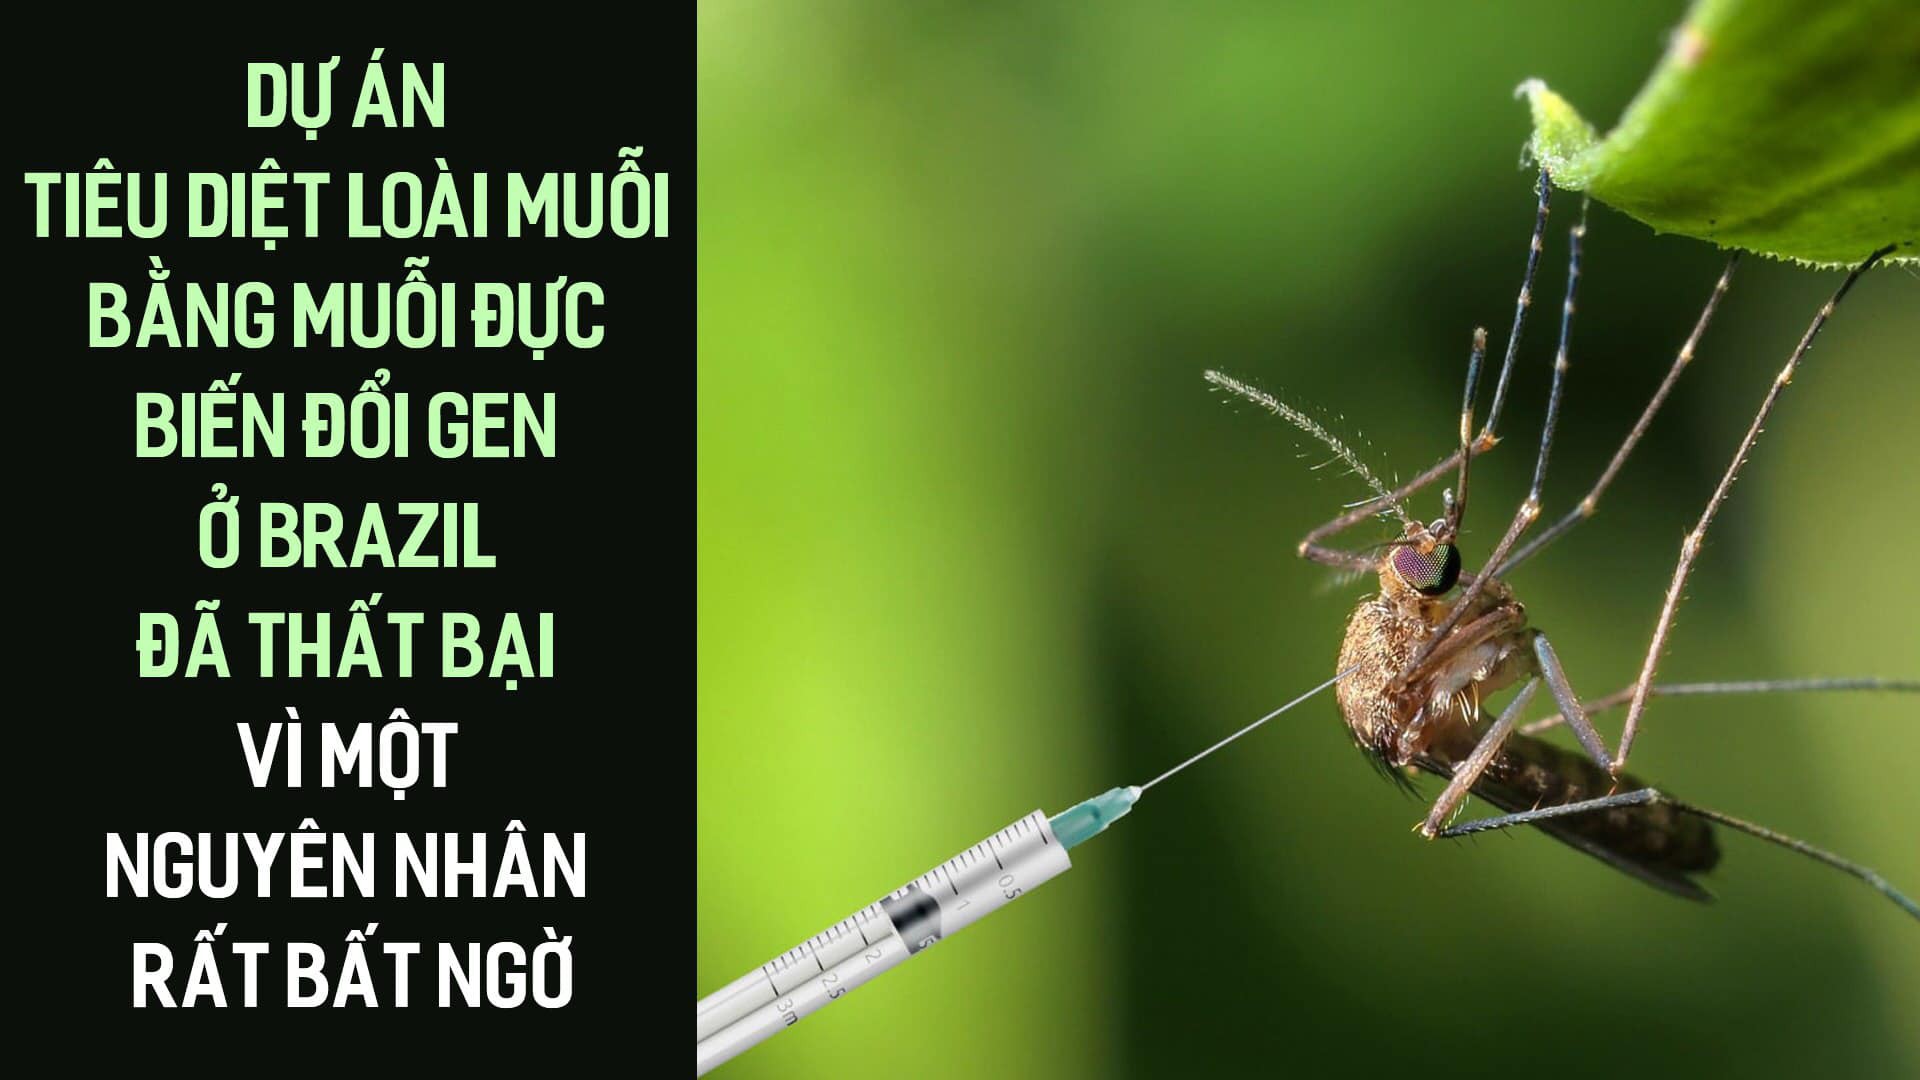 Dự án tiêu diệt loài muỗi bằng muỗi đực biến đổi gen ở Brazil đã thất bại vì một nguyên nhân rất bất ngờ